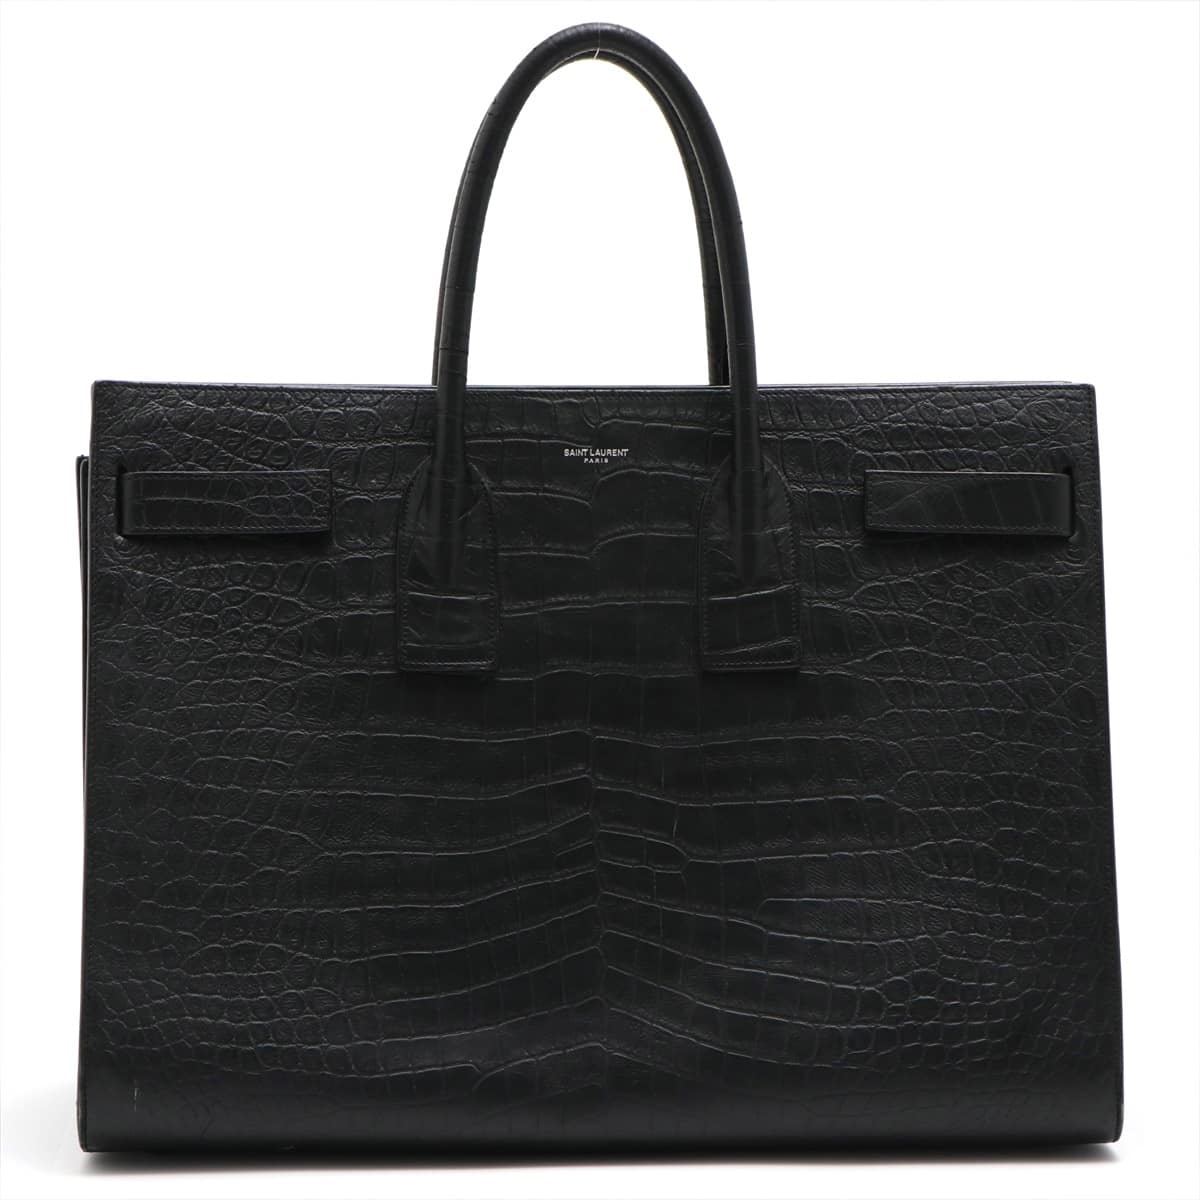 Saint Laurent Paris Sac de Jour Moc croc Tote bag Black 441571 Comes with divider pouch